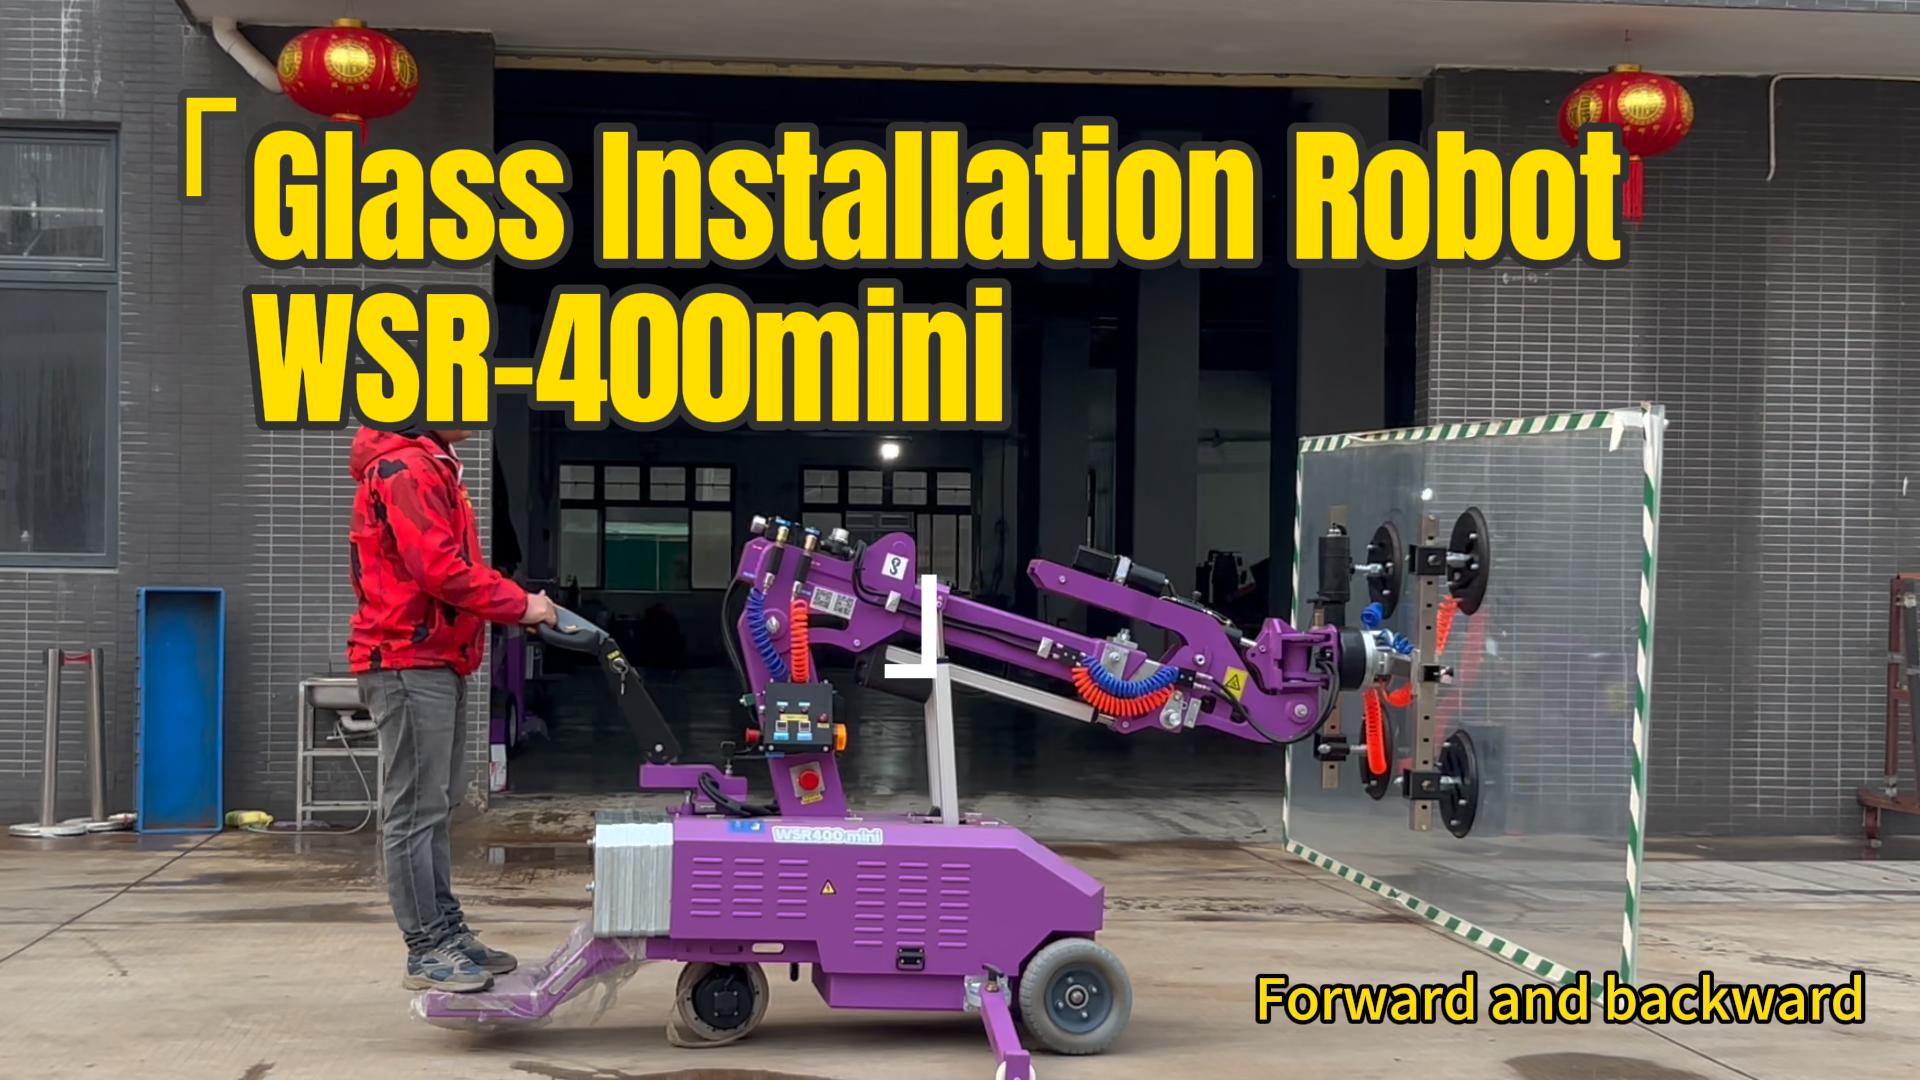 Glasinstallatie Robot WSR-400 Mini van Cowest